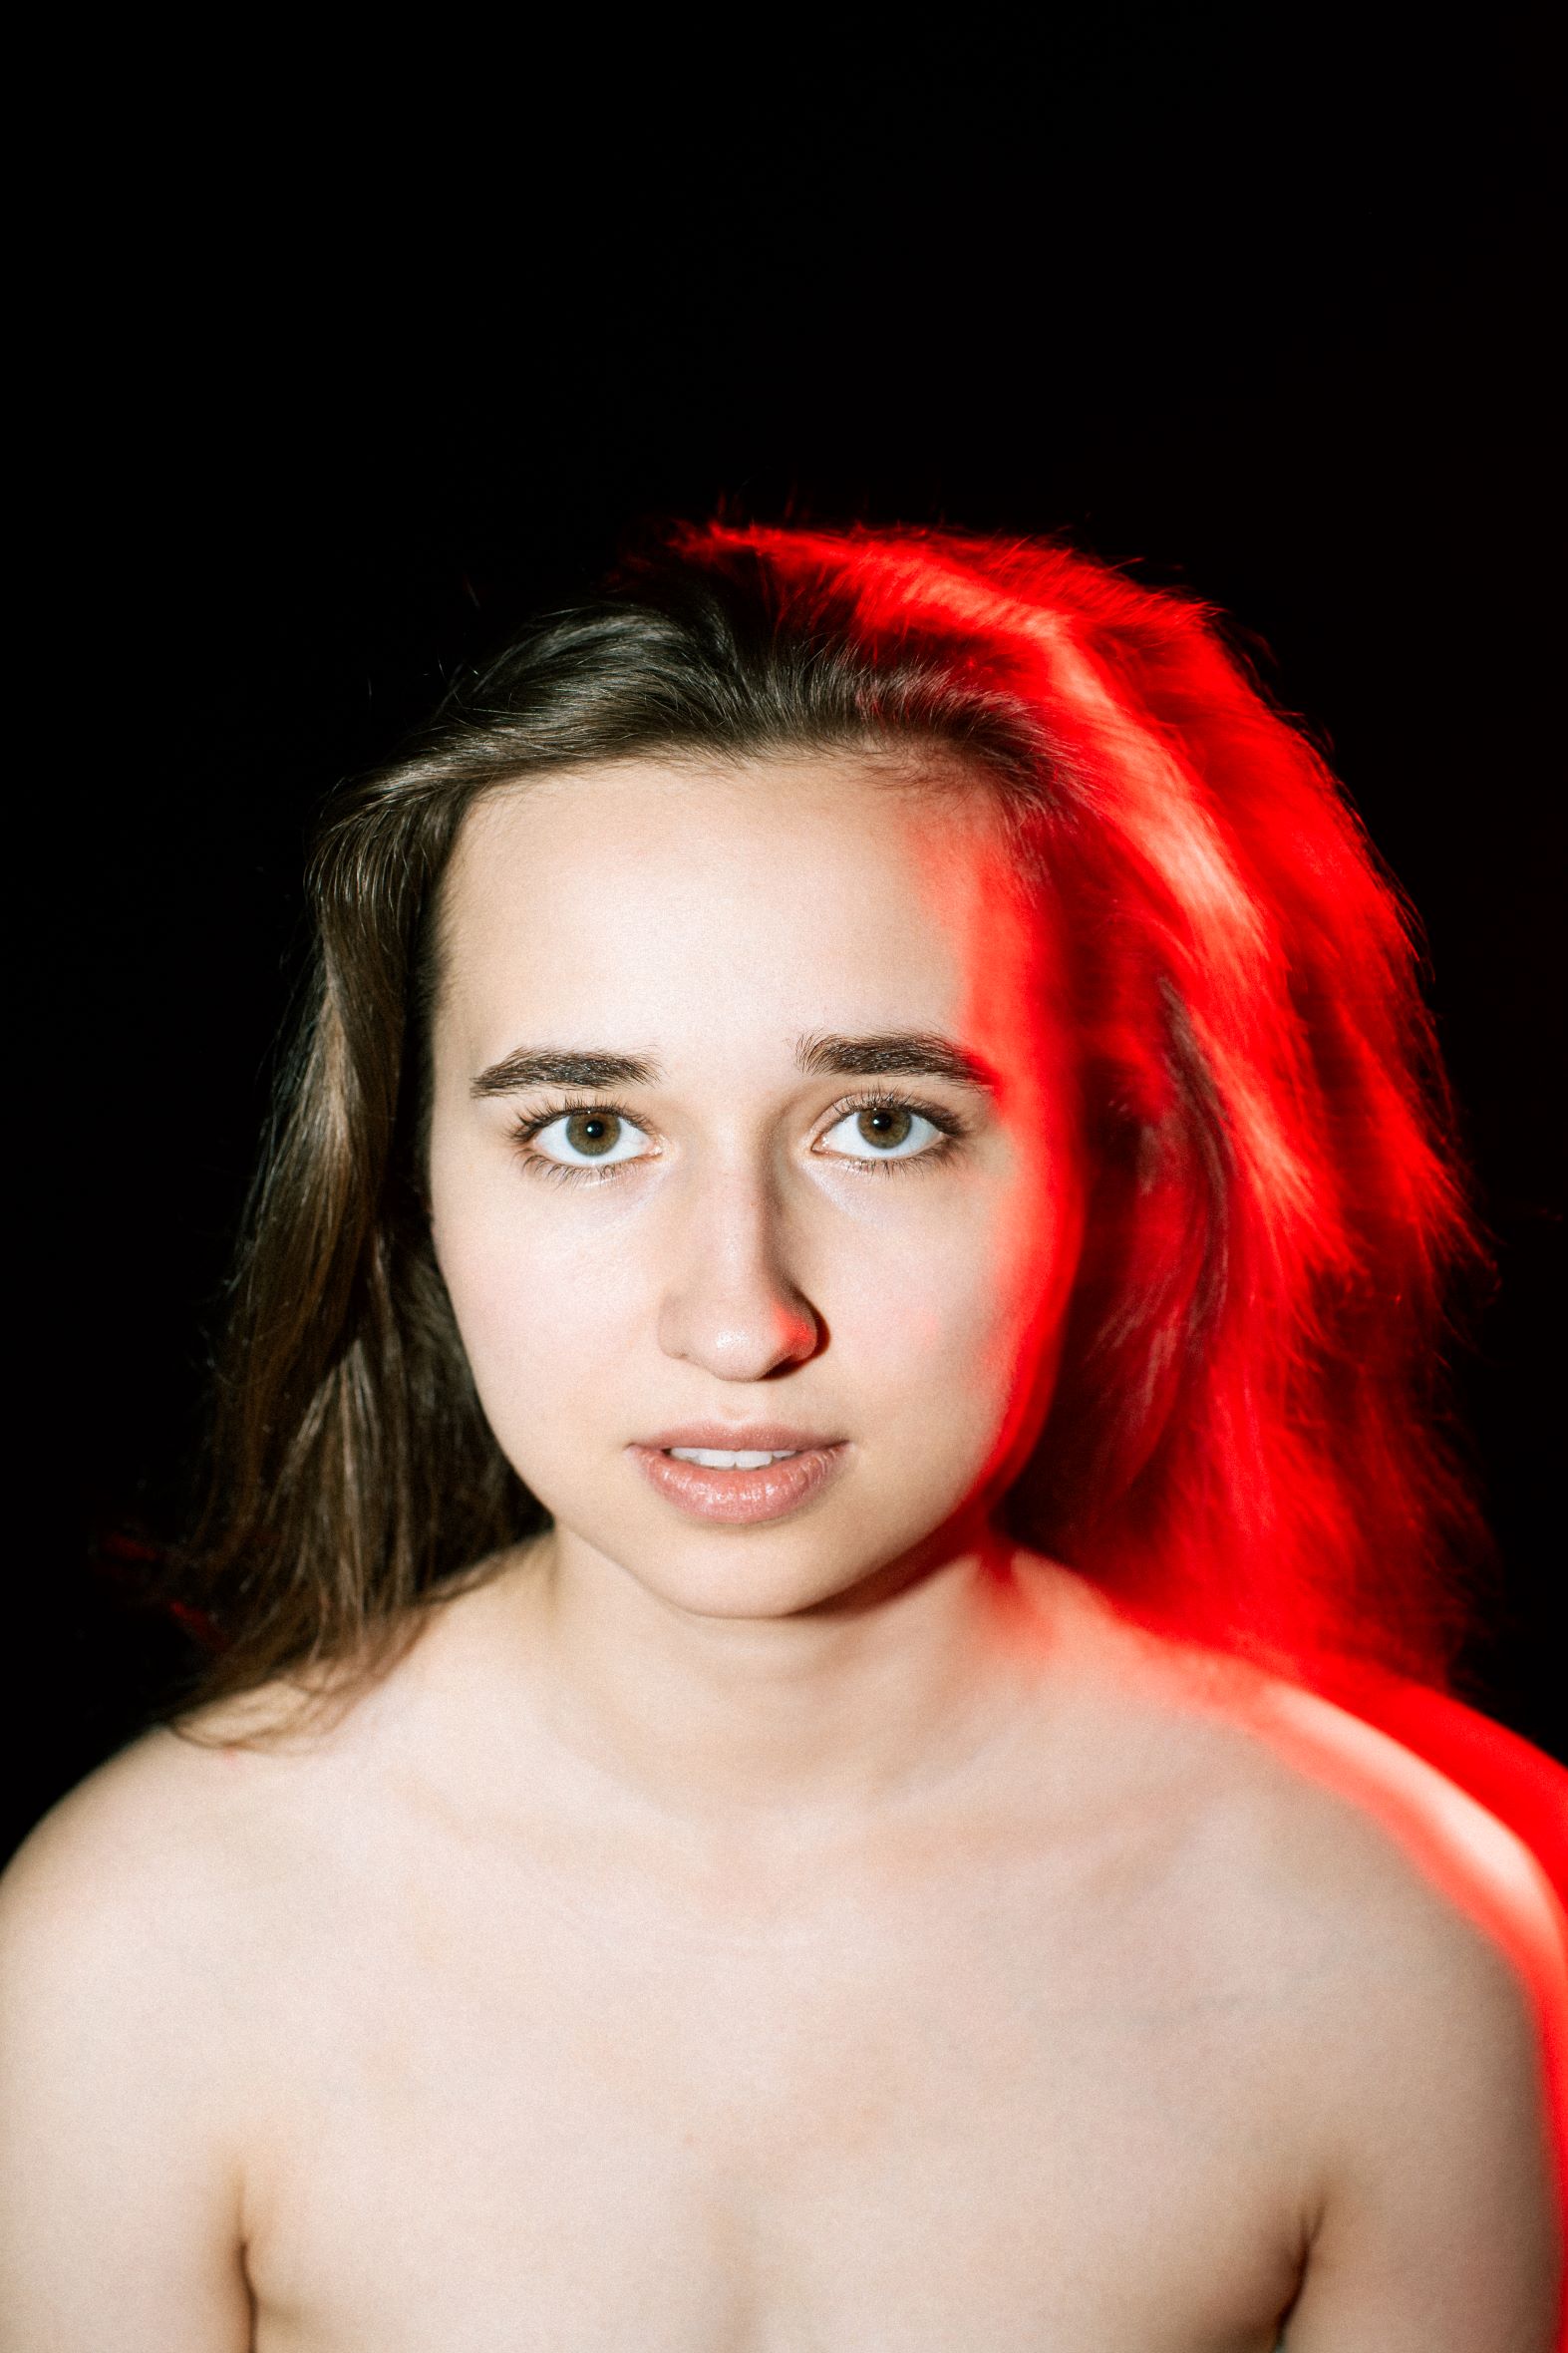 Portret młodej długowłosej blondynki. Światło padające z tyłu na głowę i nagie ramiona kobiety wyraźnie kontrastuje z czarnym tłem i tworzy intensywną czerwoną poświatę.